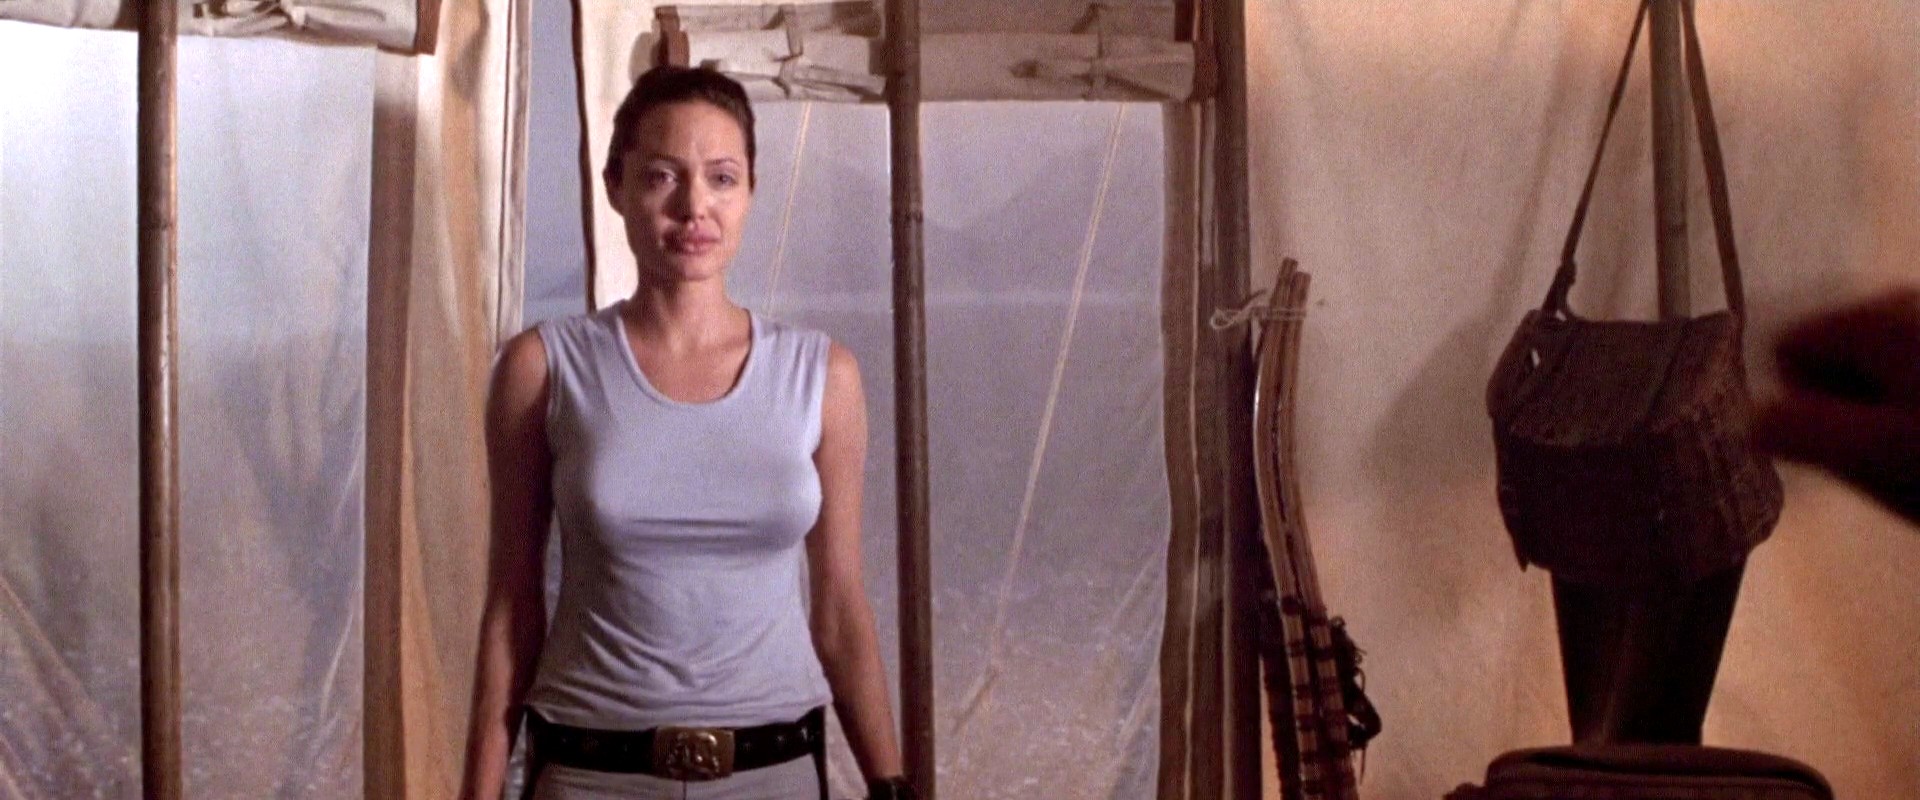 Анджелина Джоли забыла одеть трусы и показала свои прелести